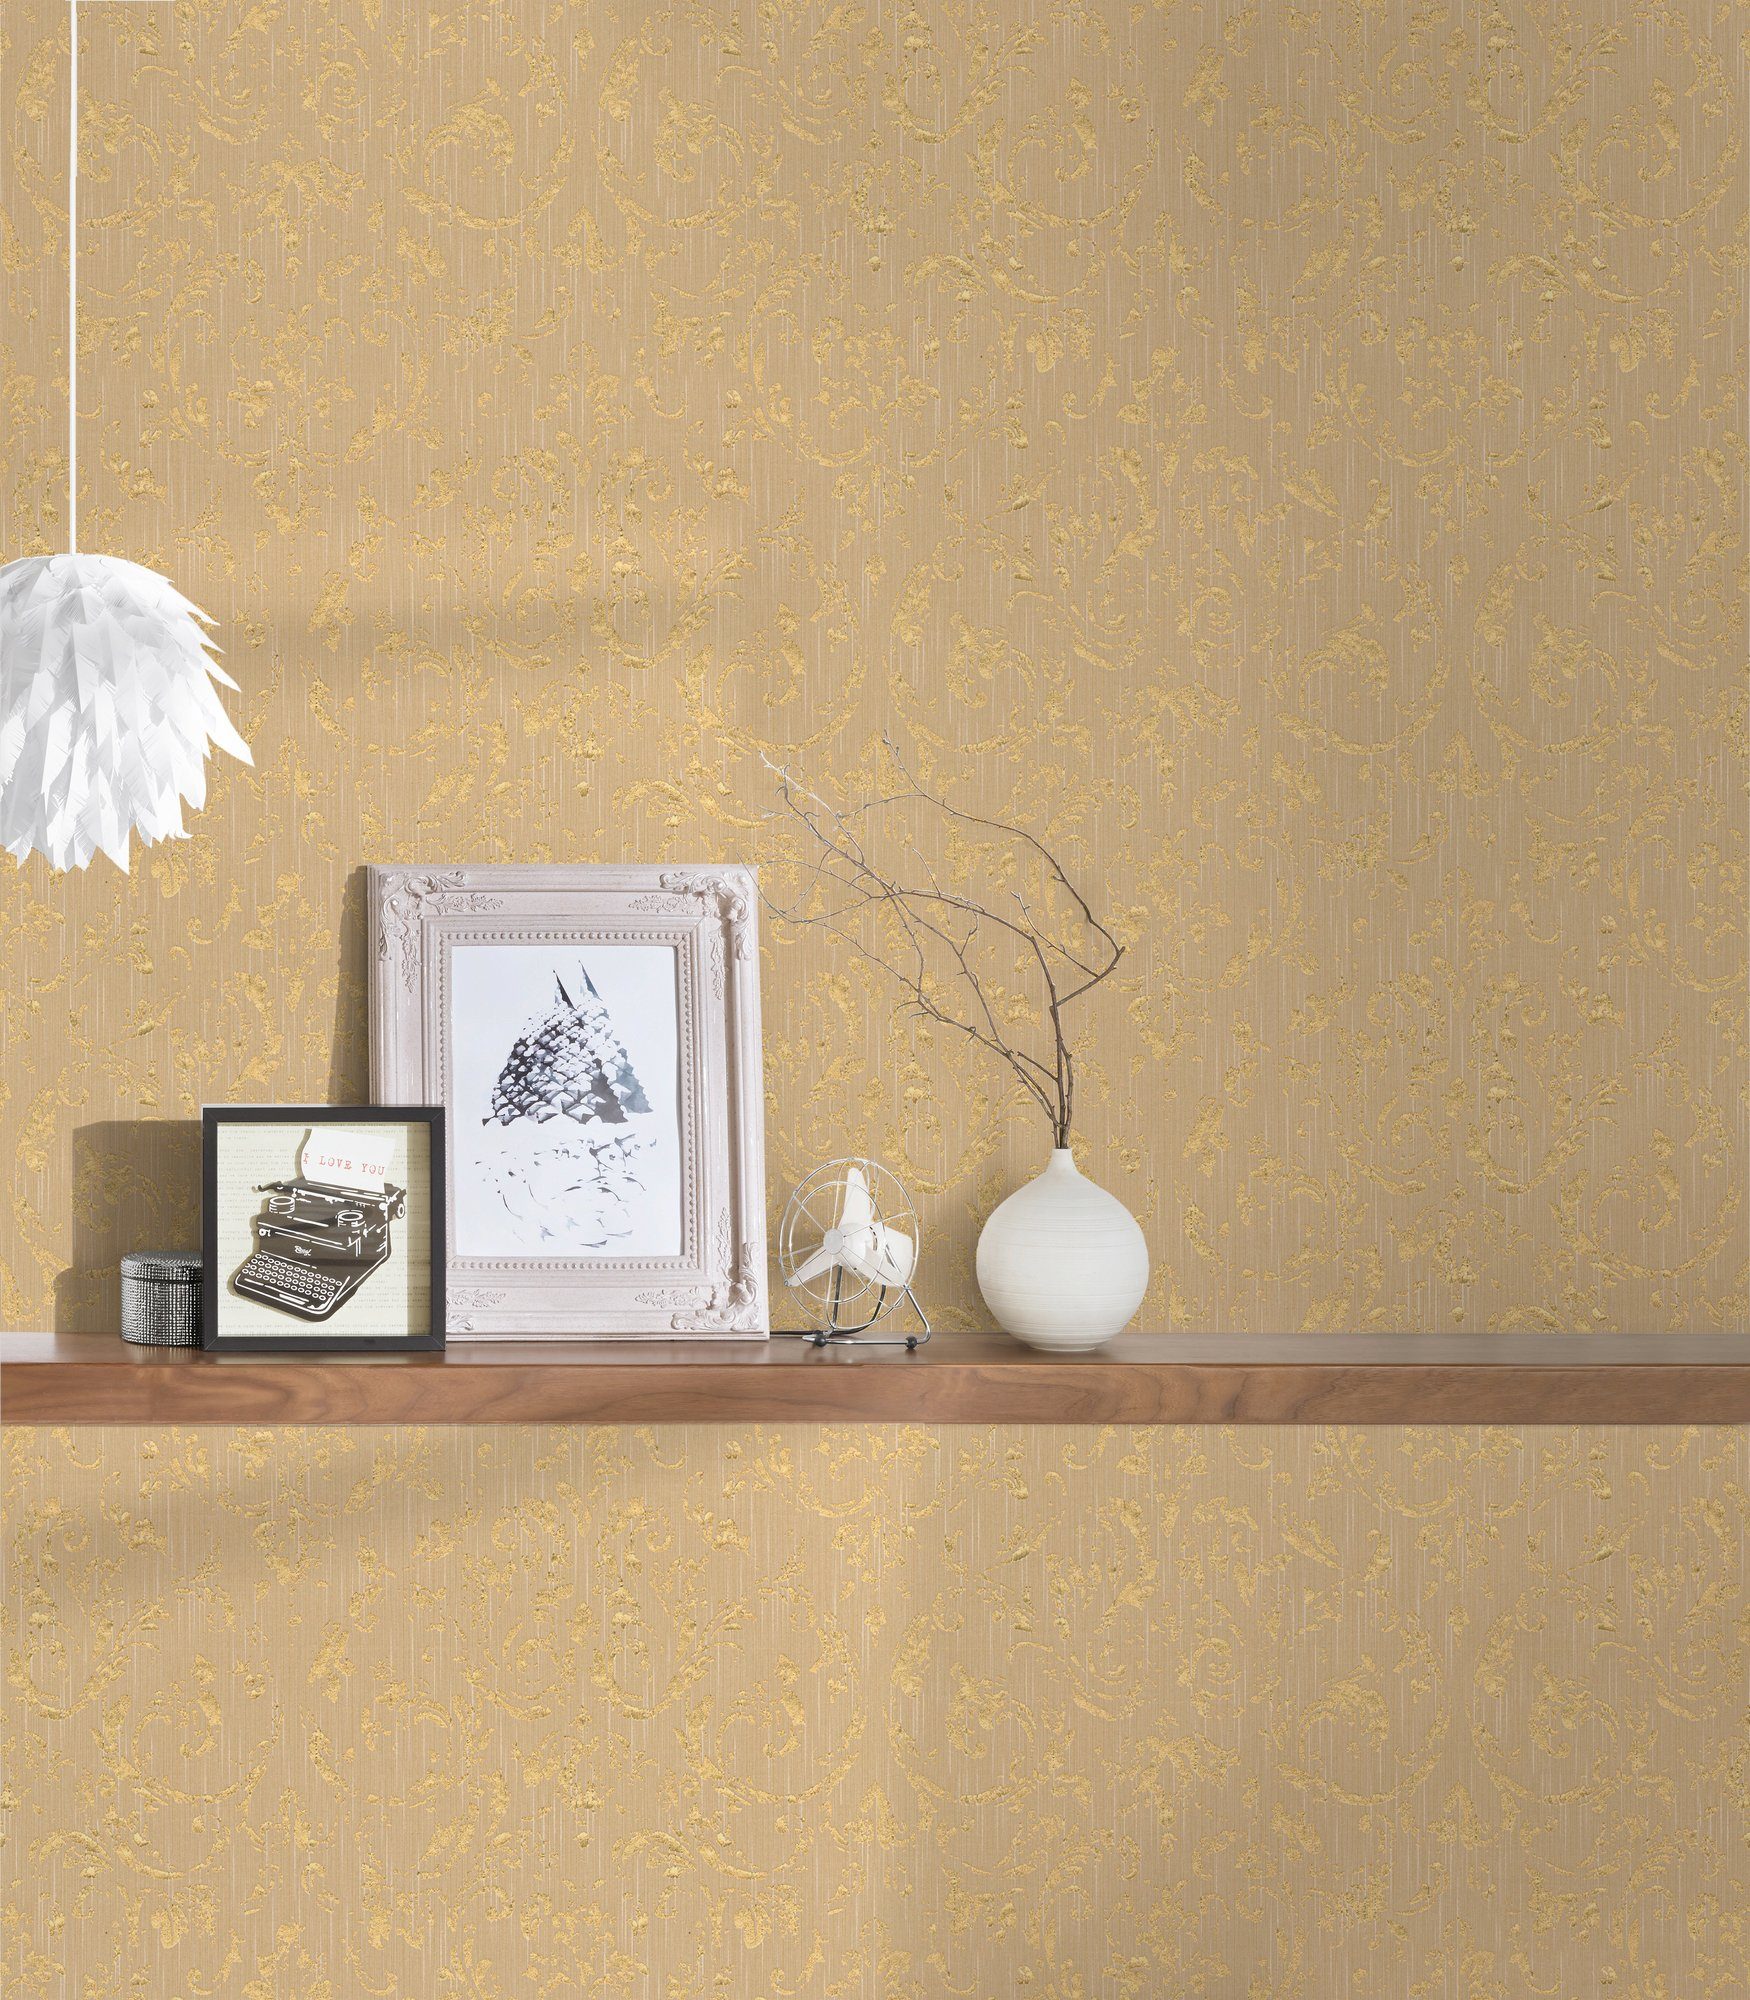 Création A.S. Paper Ornament gold/beige Barock Tapete matt, Silk, Textiltapete Barock, Architects Metallic samtig, glänzend,